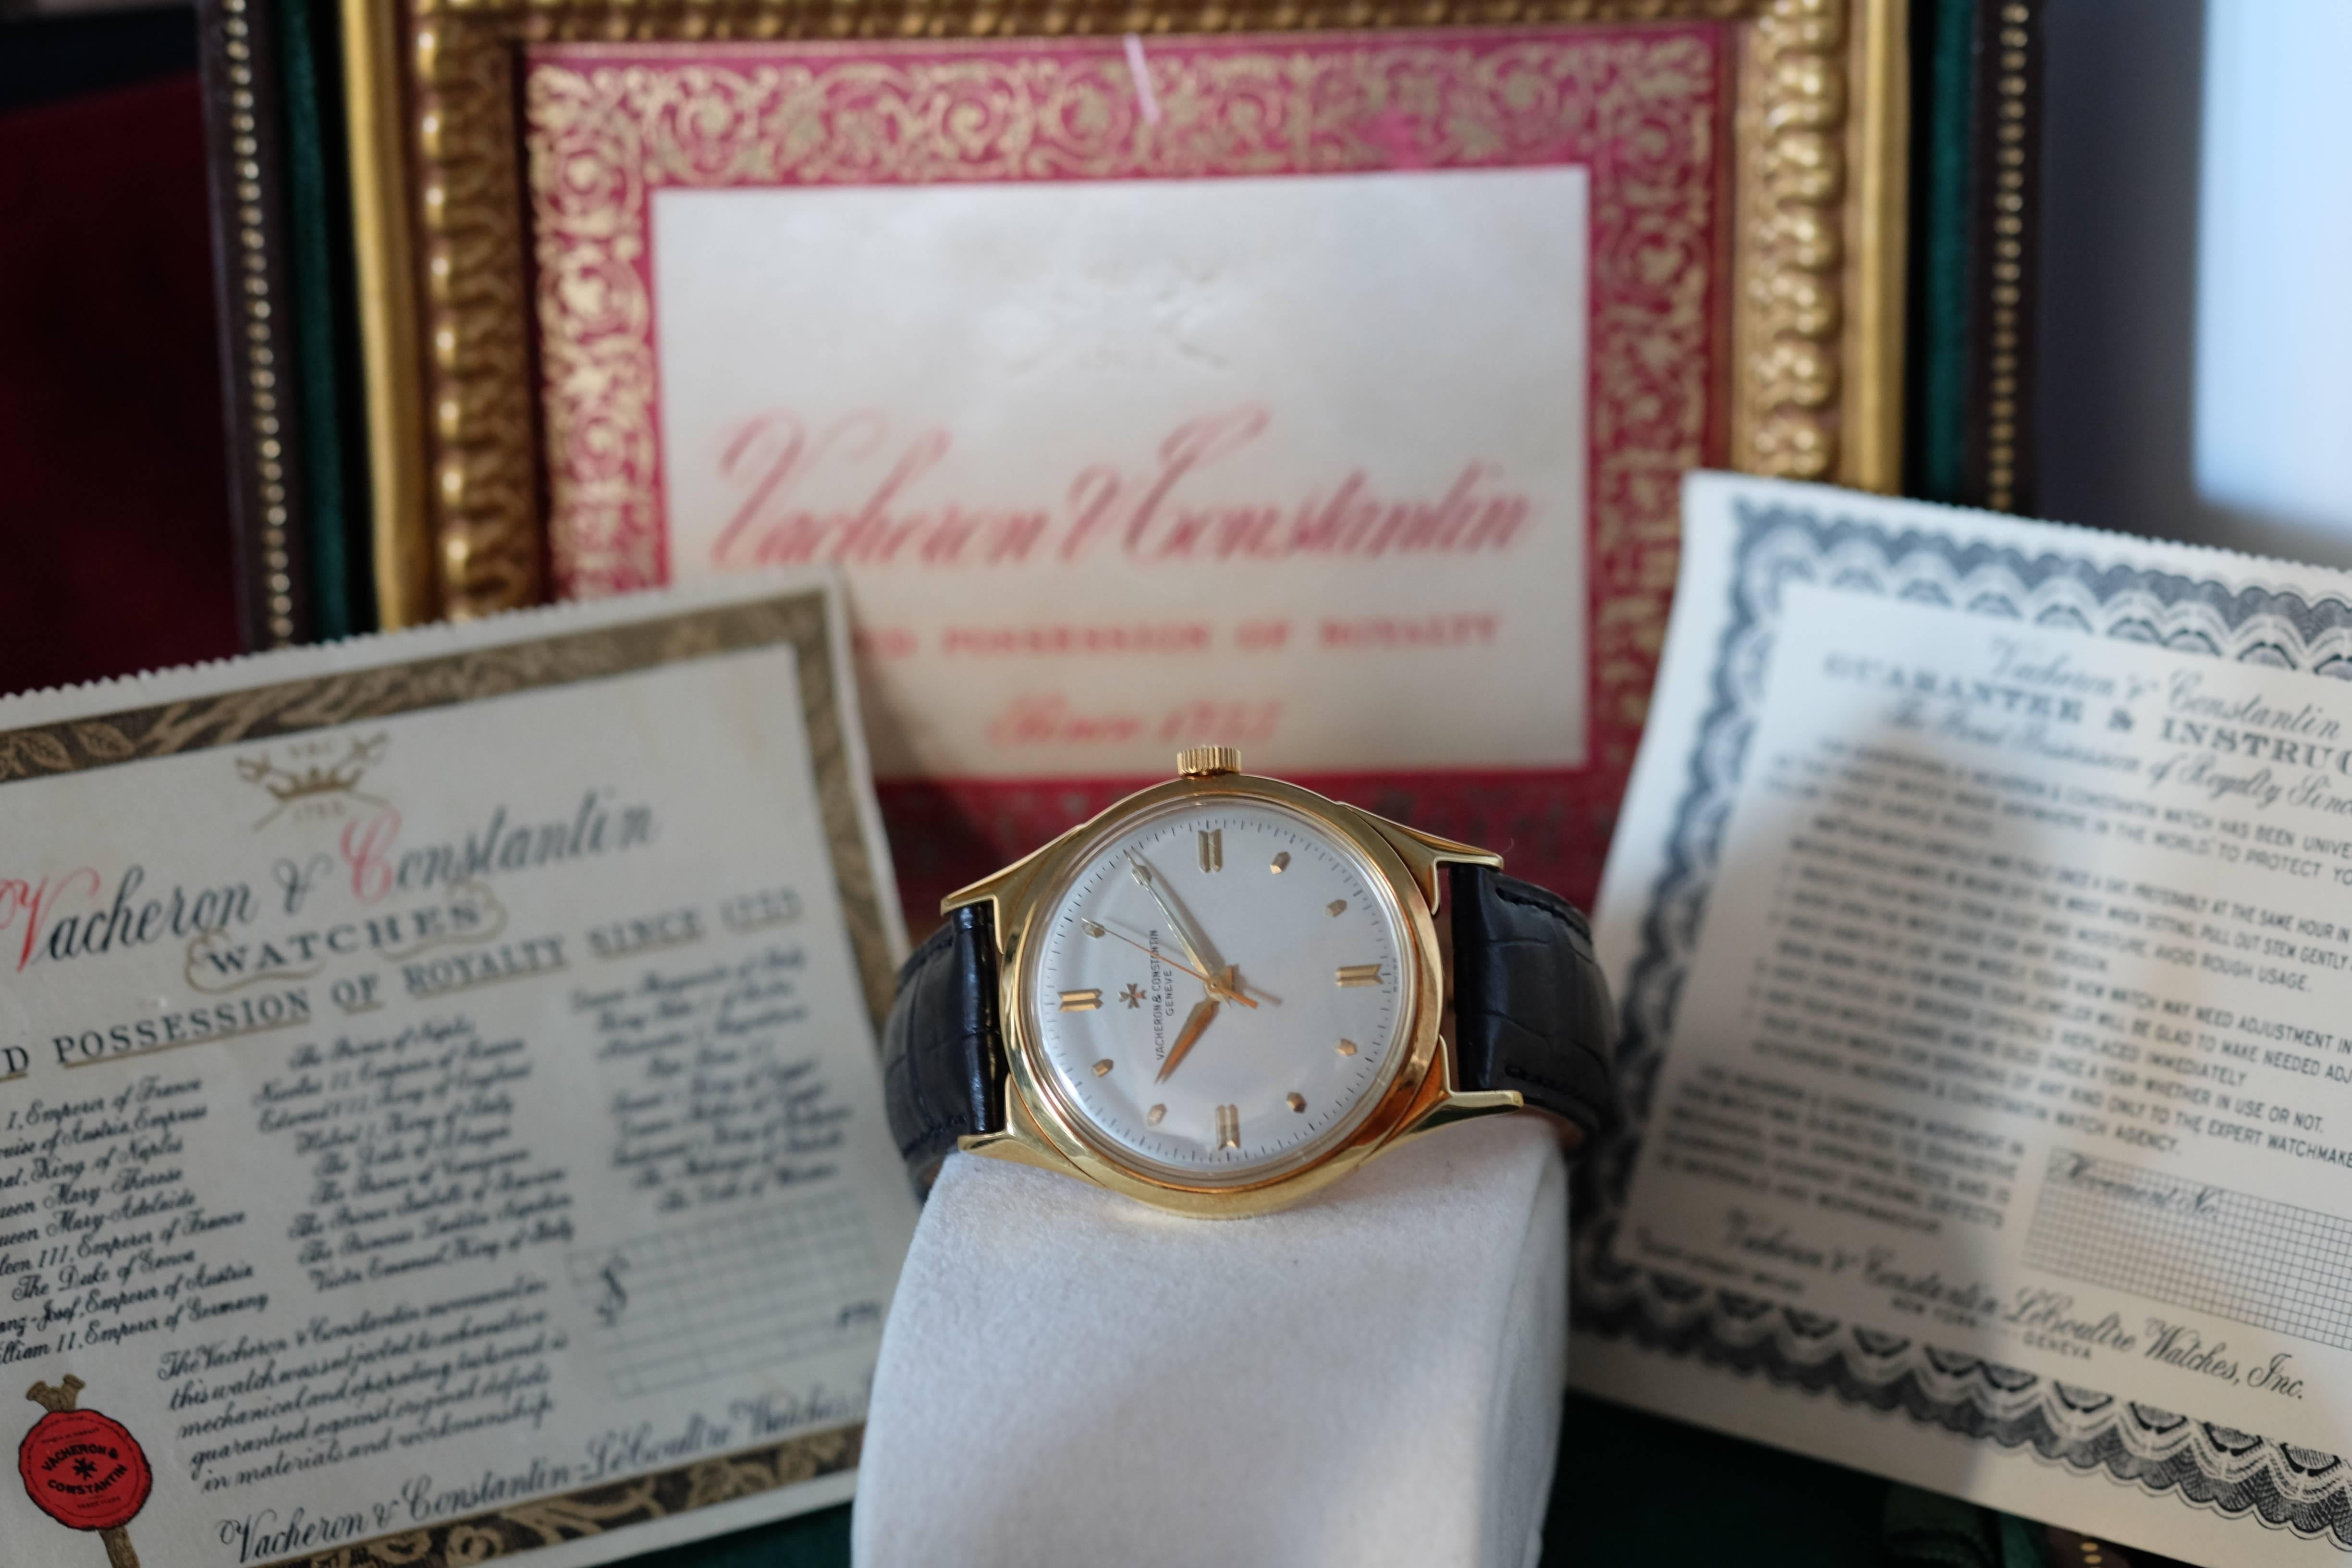 Vacheron Constantin gold Chronometre Royal extreme precision watch Circa 1955 1